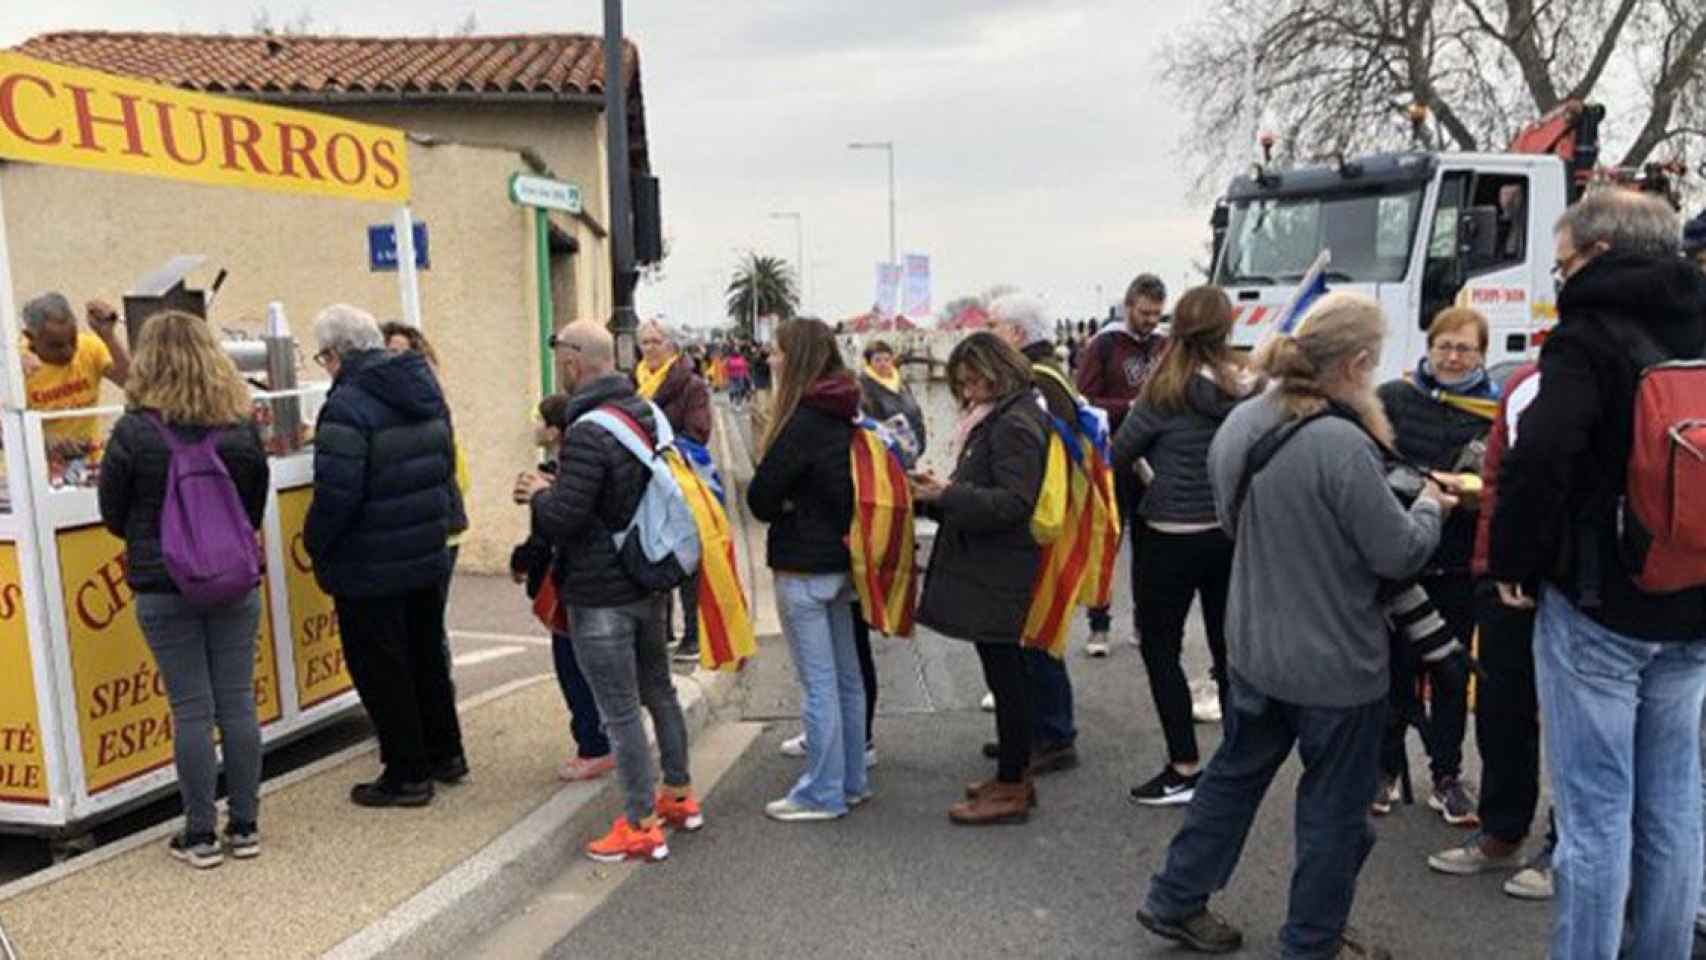 Un vendedor ambulante hace negocio vendiendo churros españoles a los independentistas que asistieron al mitin de Carles Puigdemont en Perpiñán / E-NOTICIES